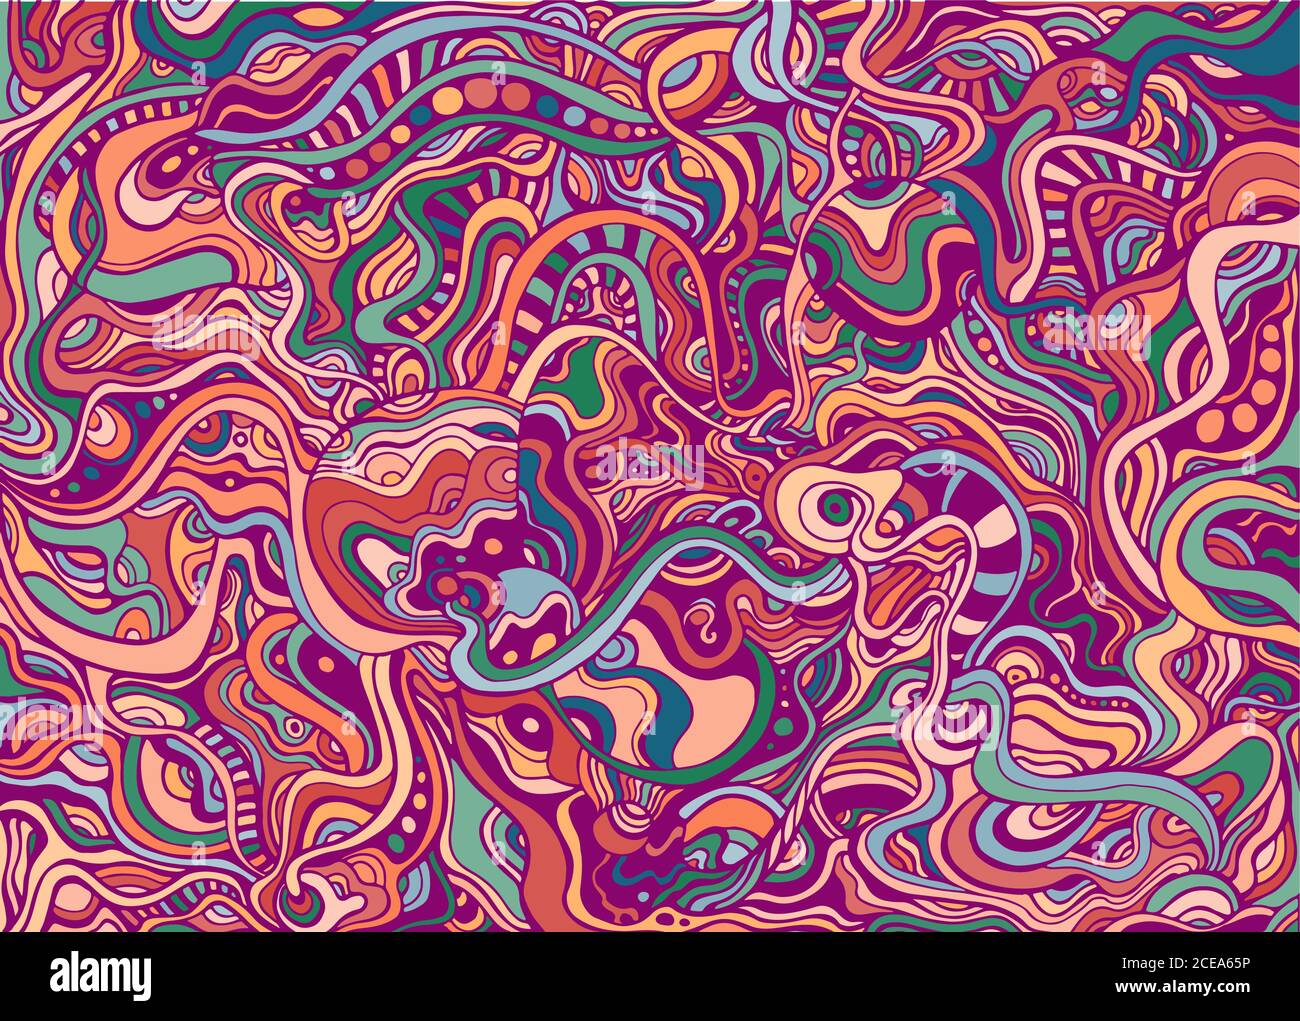 Fröhlich hell saftig Sommer abstrakt retro Hippie psychedelischen Hintergrund. Stock Vektor